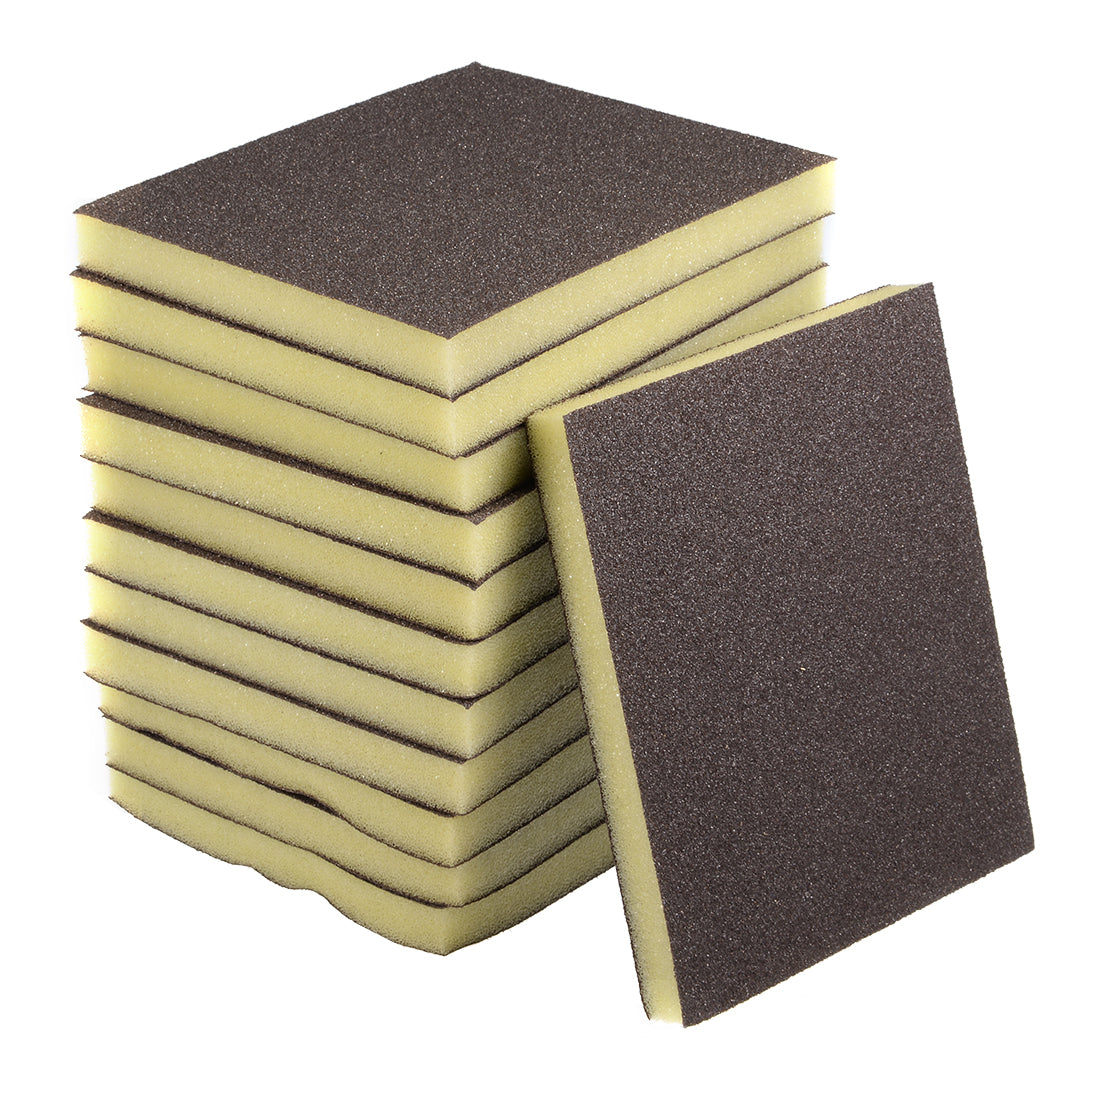 uxcell Uxcell Sanding Sponge, Coarse Grit 80 Grit Sanding Block Pad, 4.72" x 3.86" x 0.47" Size 12pcs